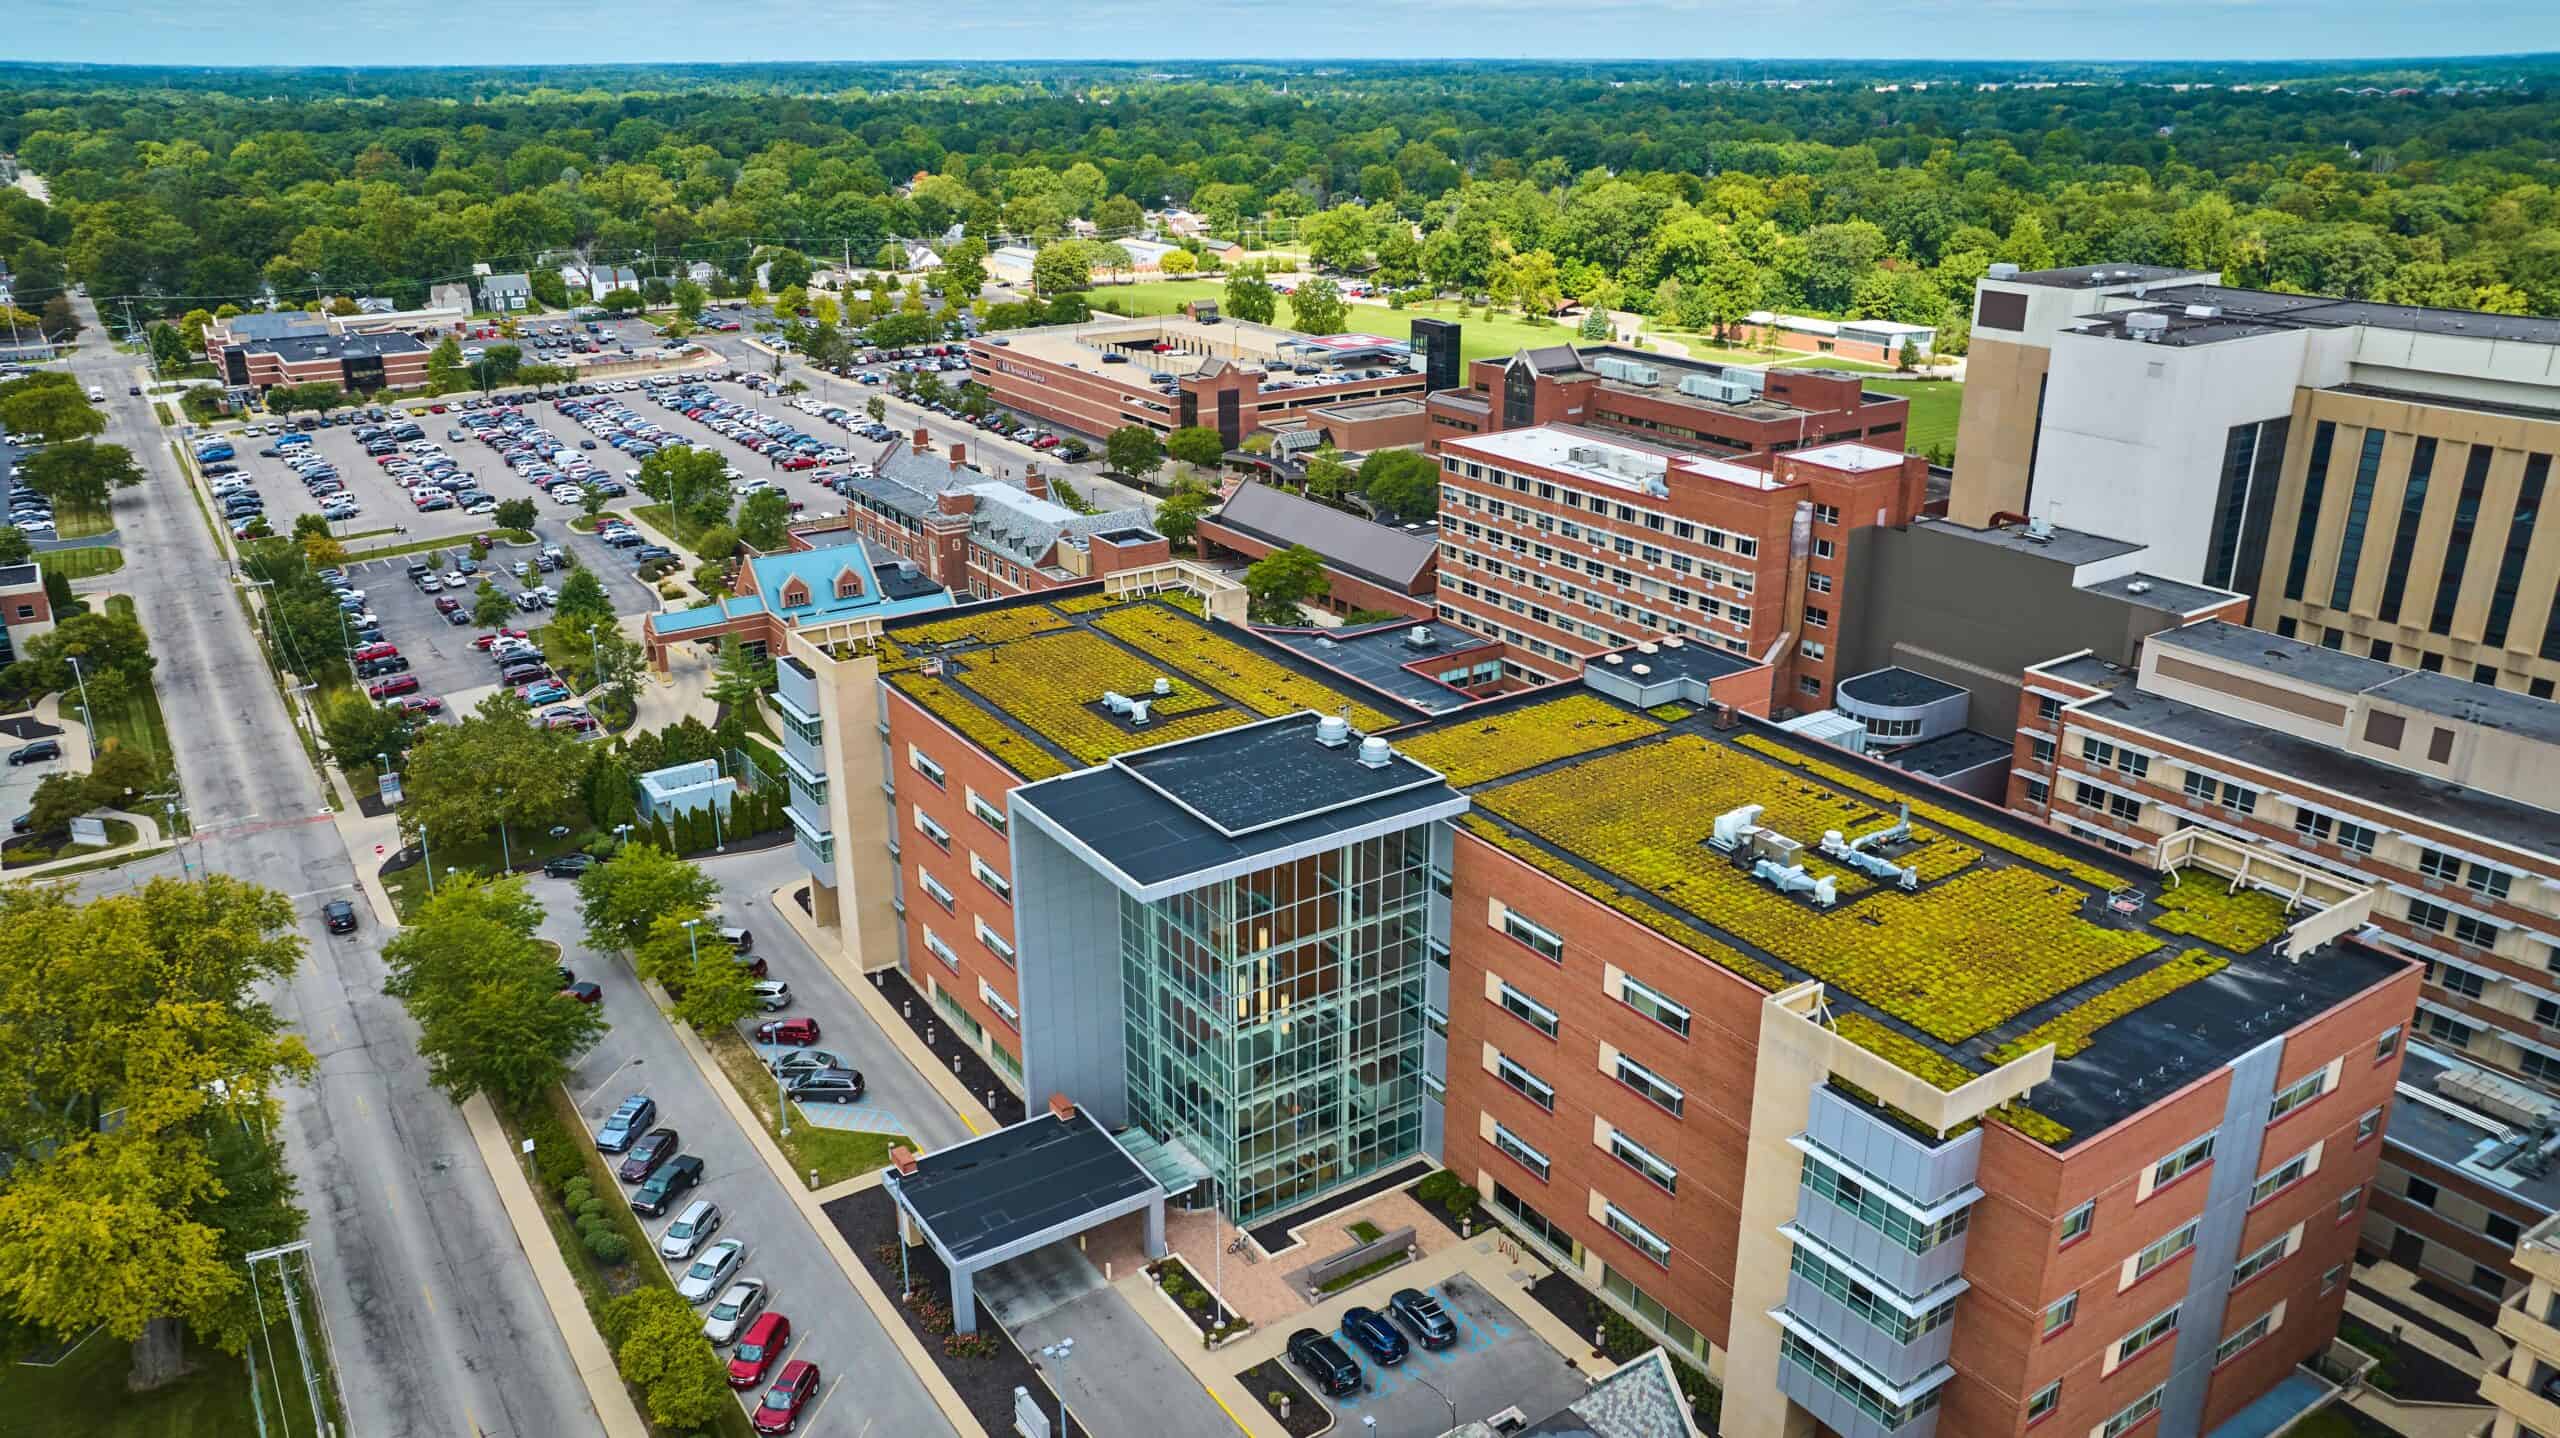 Muncie, IN | Green rooftop building Ball State University, Muncie IN aerial